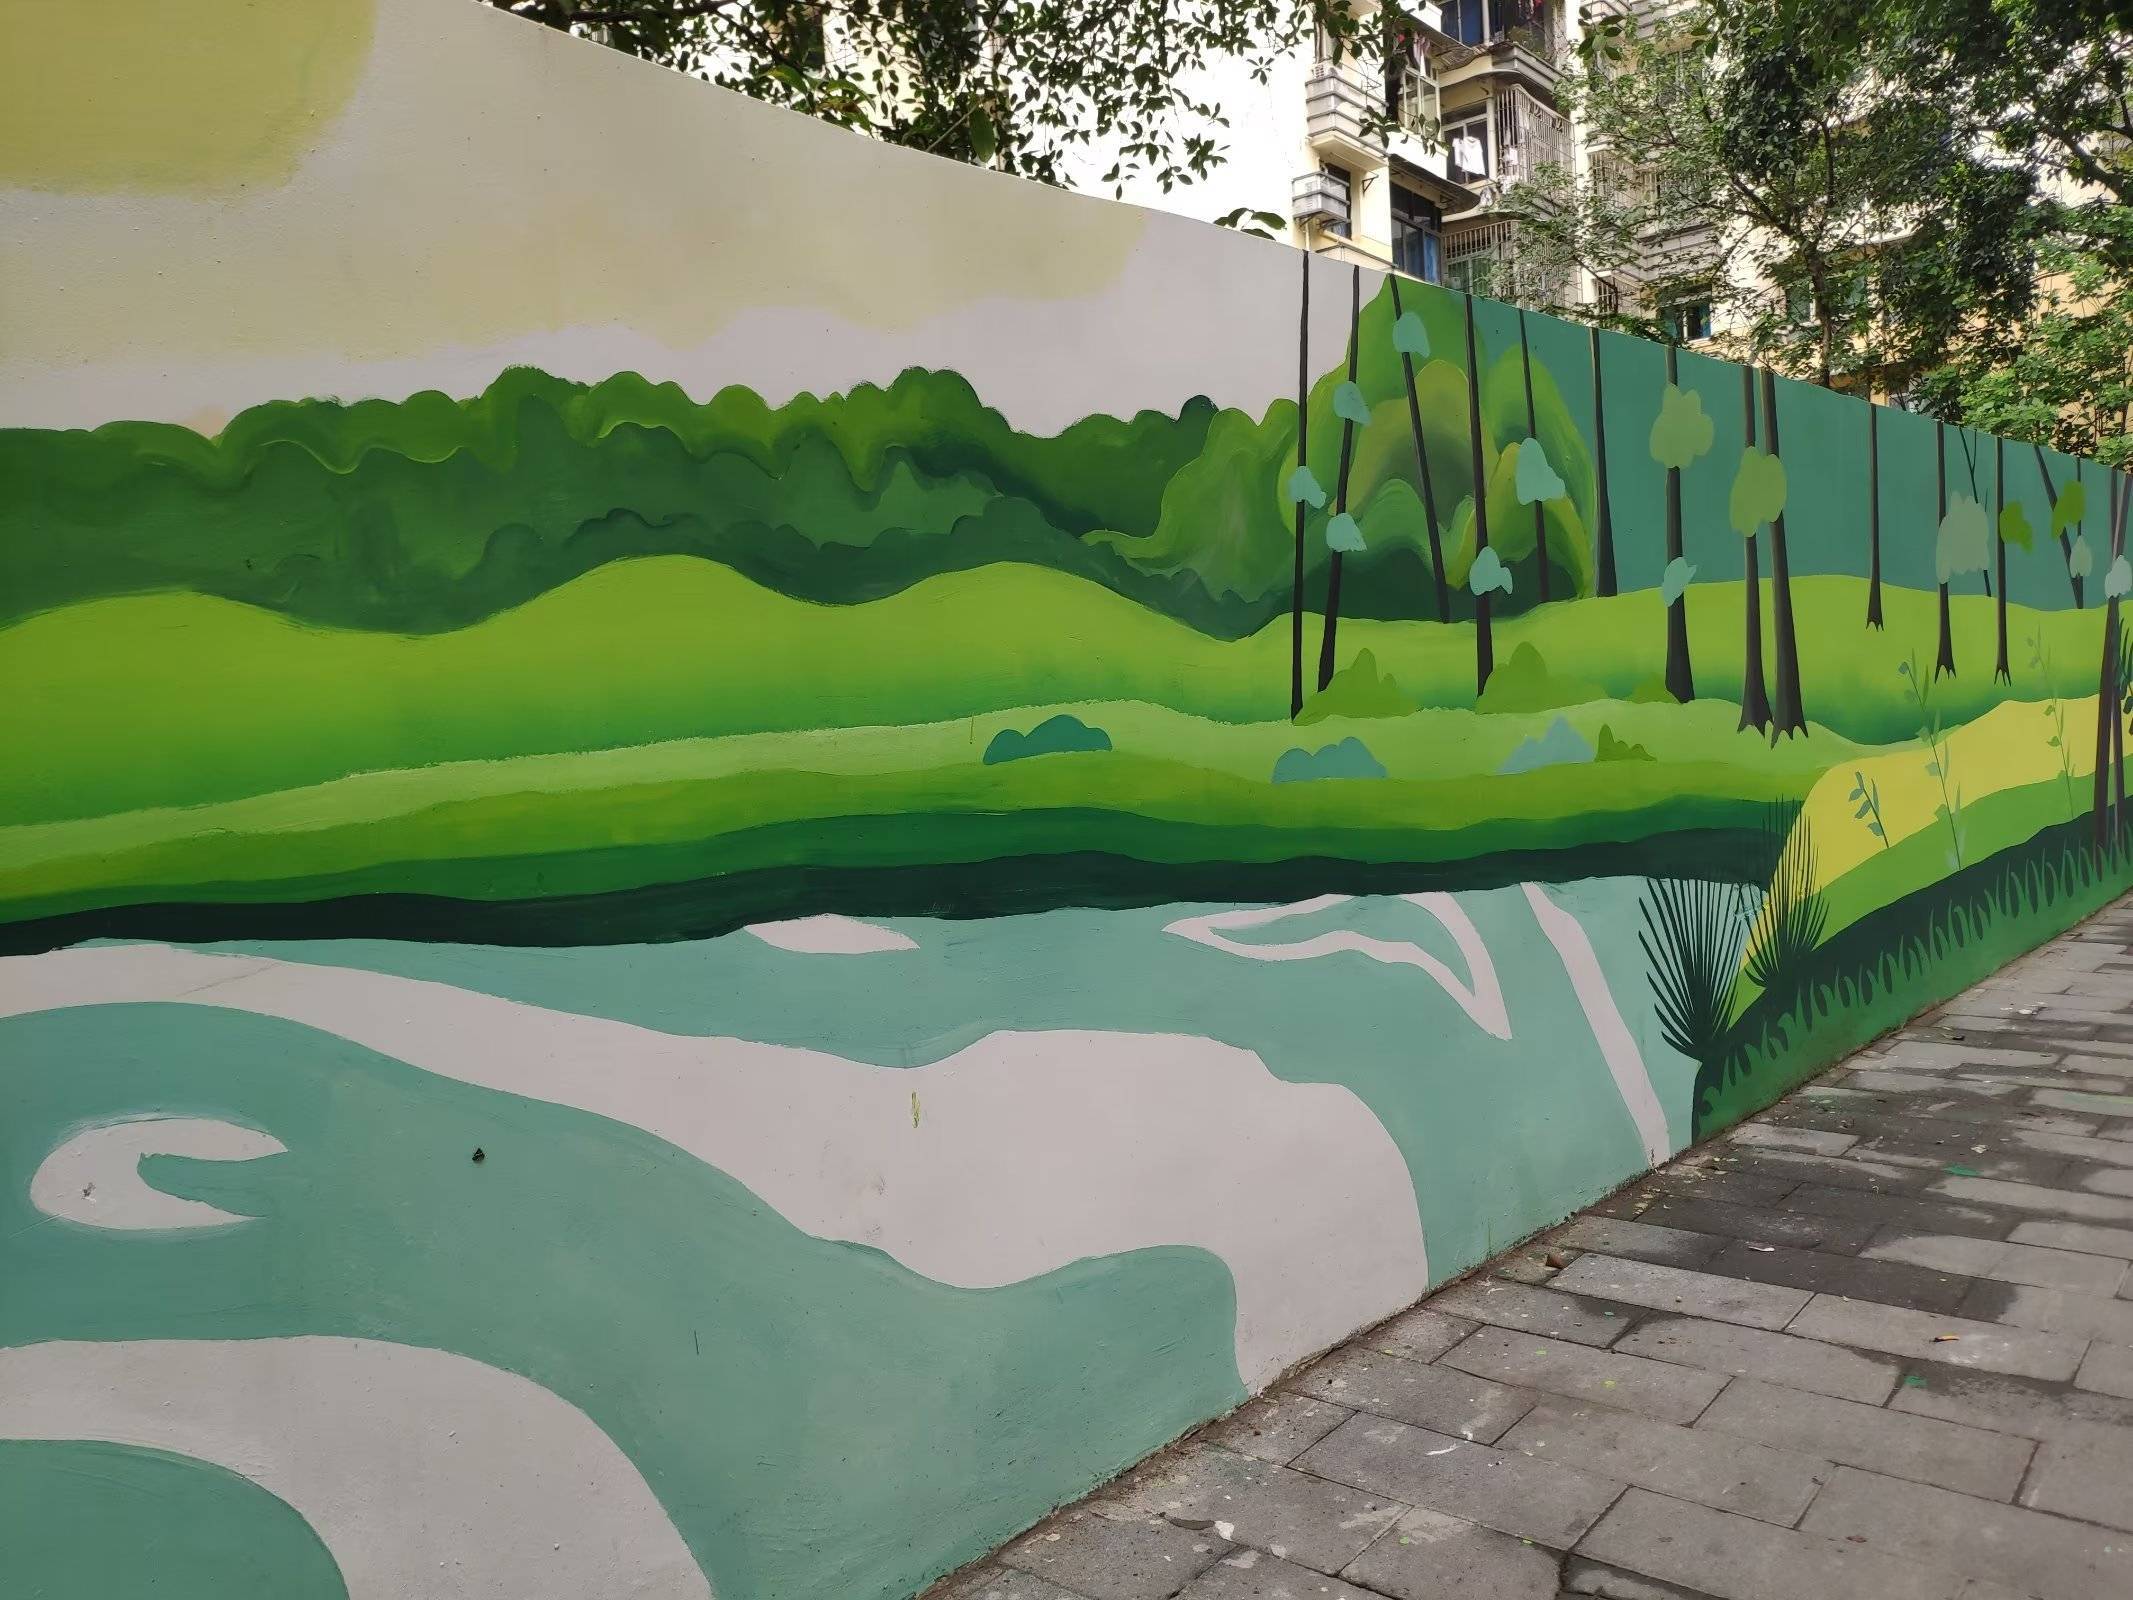 重庆:大学生街头创作墙体彩绘,蓝天白云花草树与绘画巧妙结合